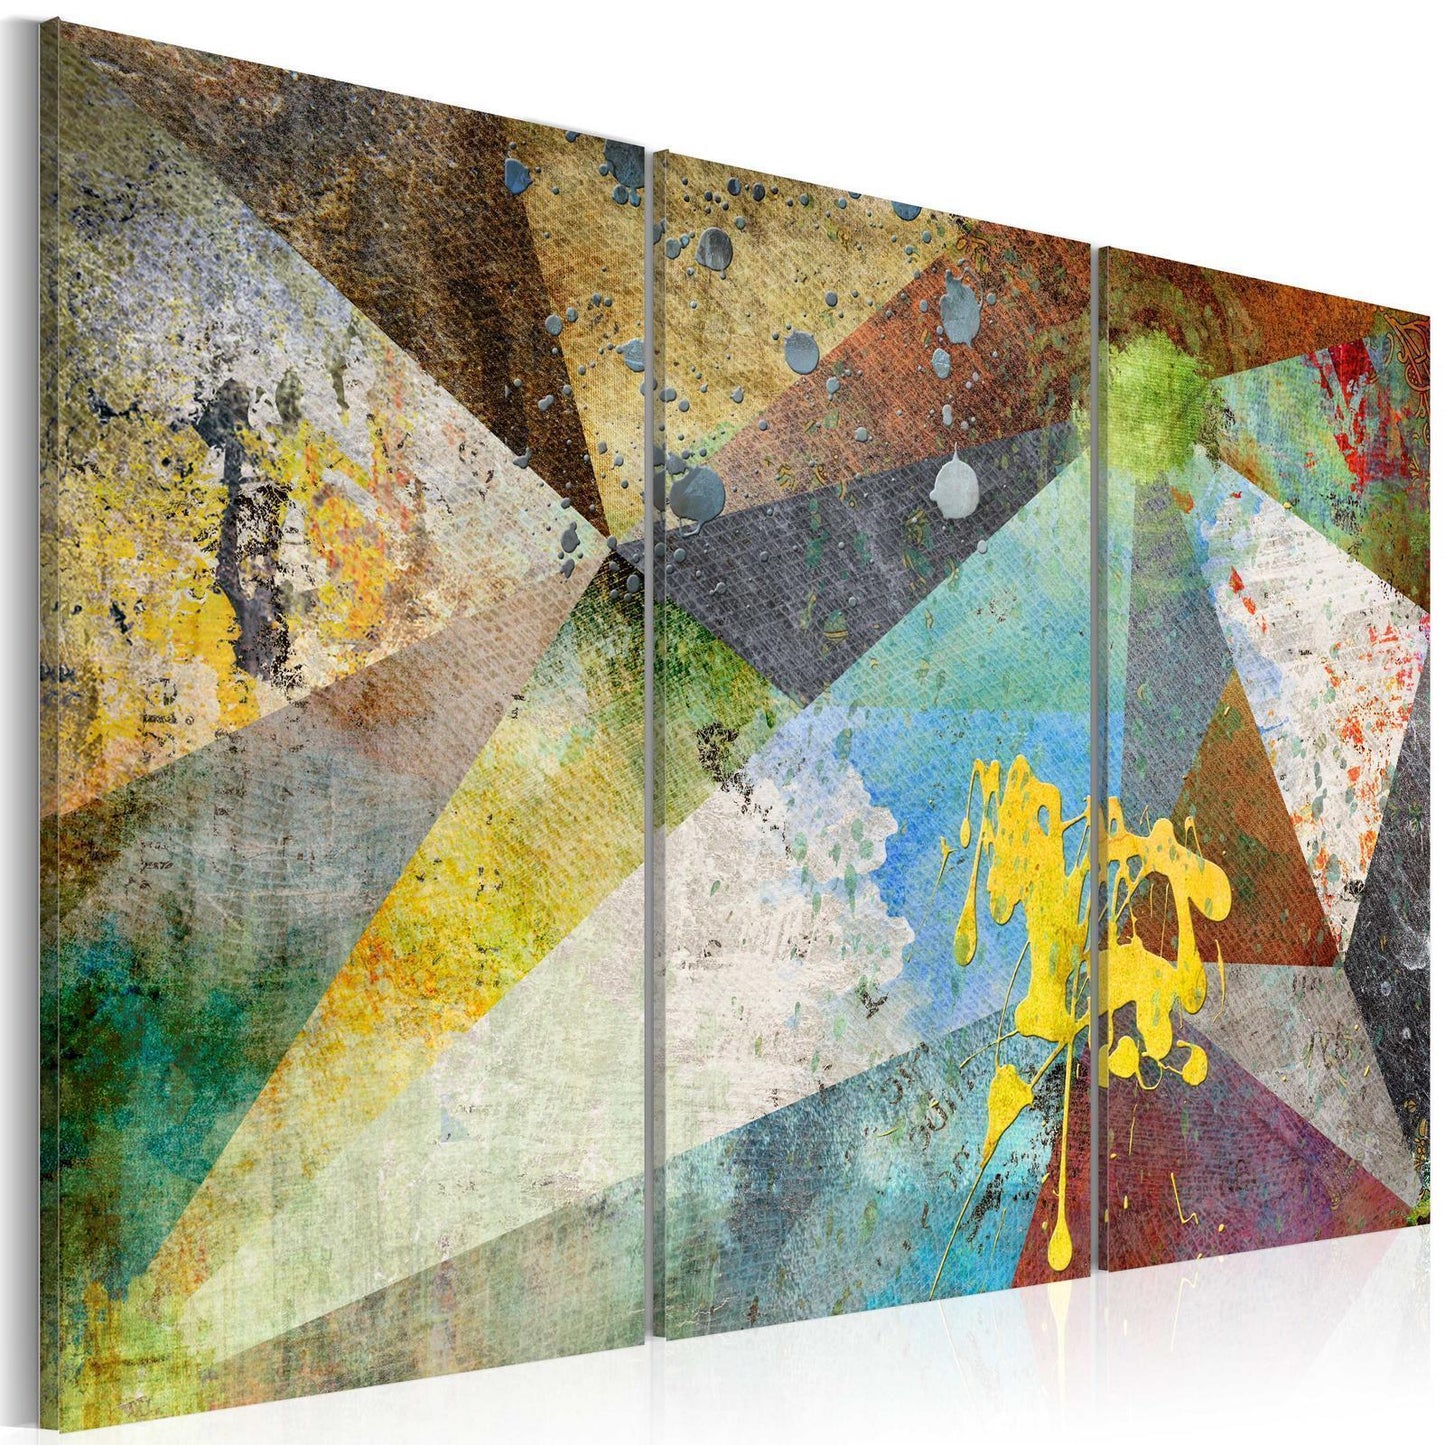 Schilderij - Through the Prism of Colors